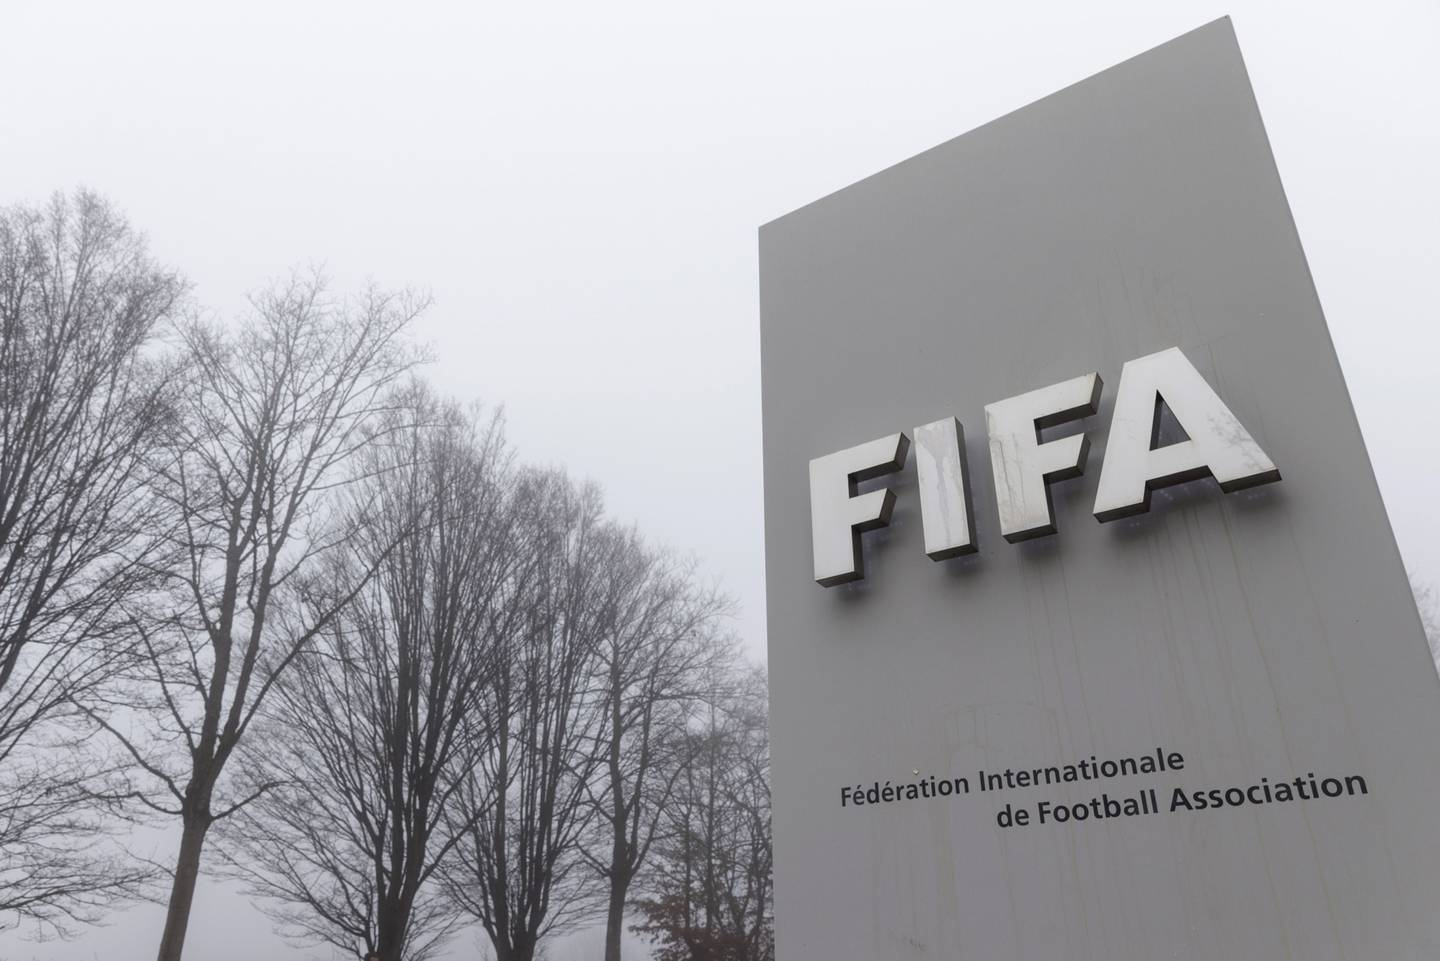 El proceso contra Televisa  fue motivado luego de que saliera a la luz el escándalo de corrupción al interior de la Federación Internacional de Fútbol Asociación (FIFA)